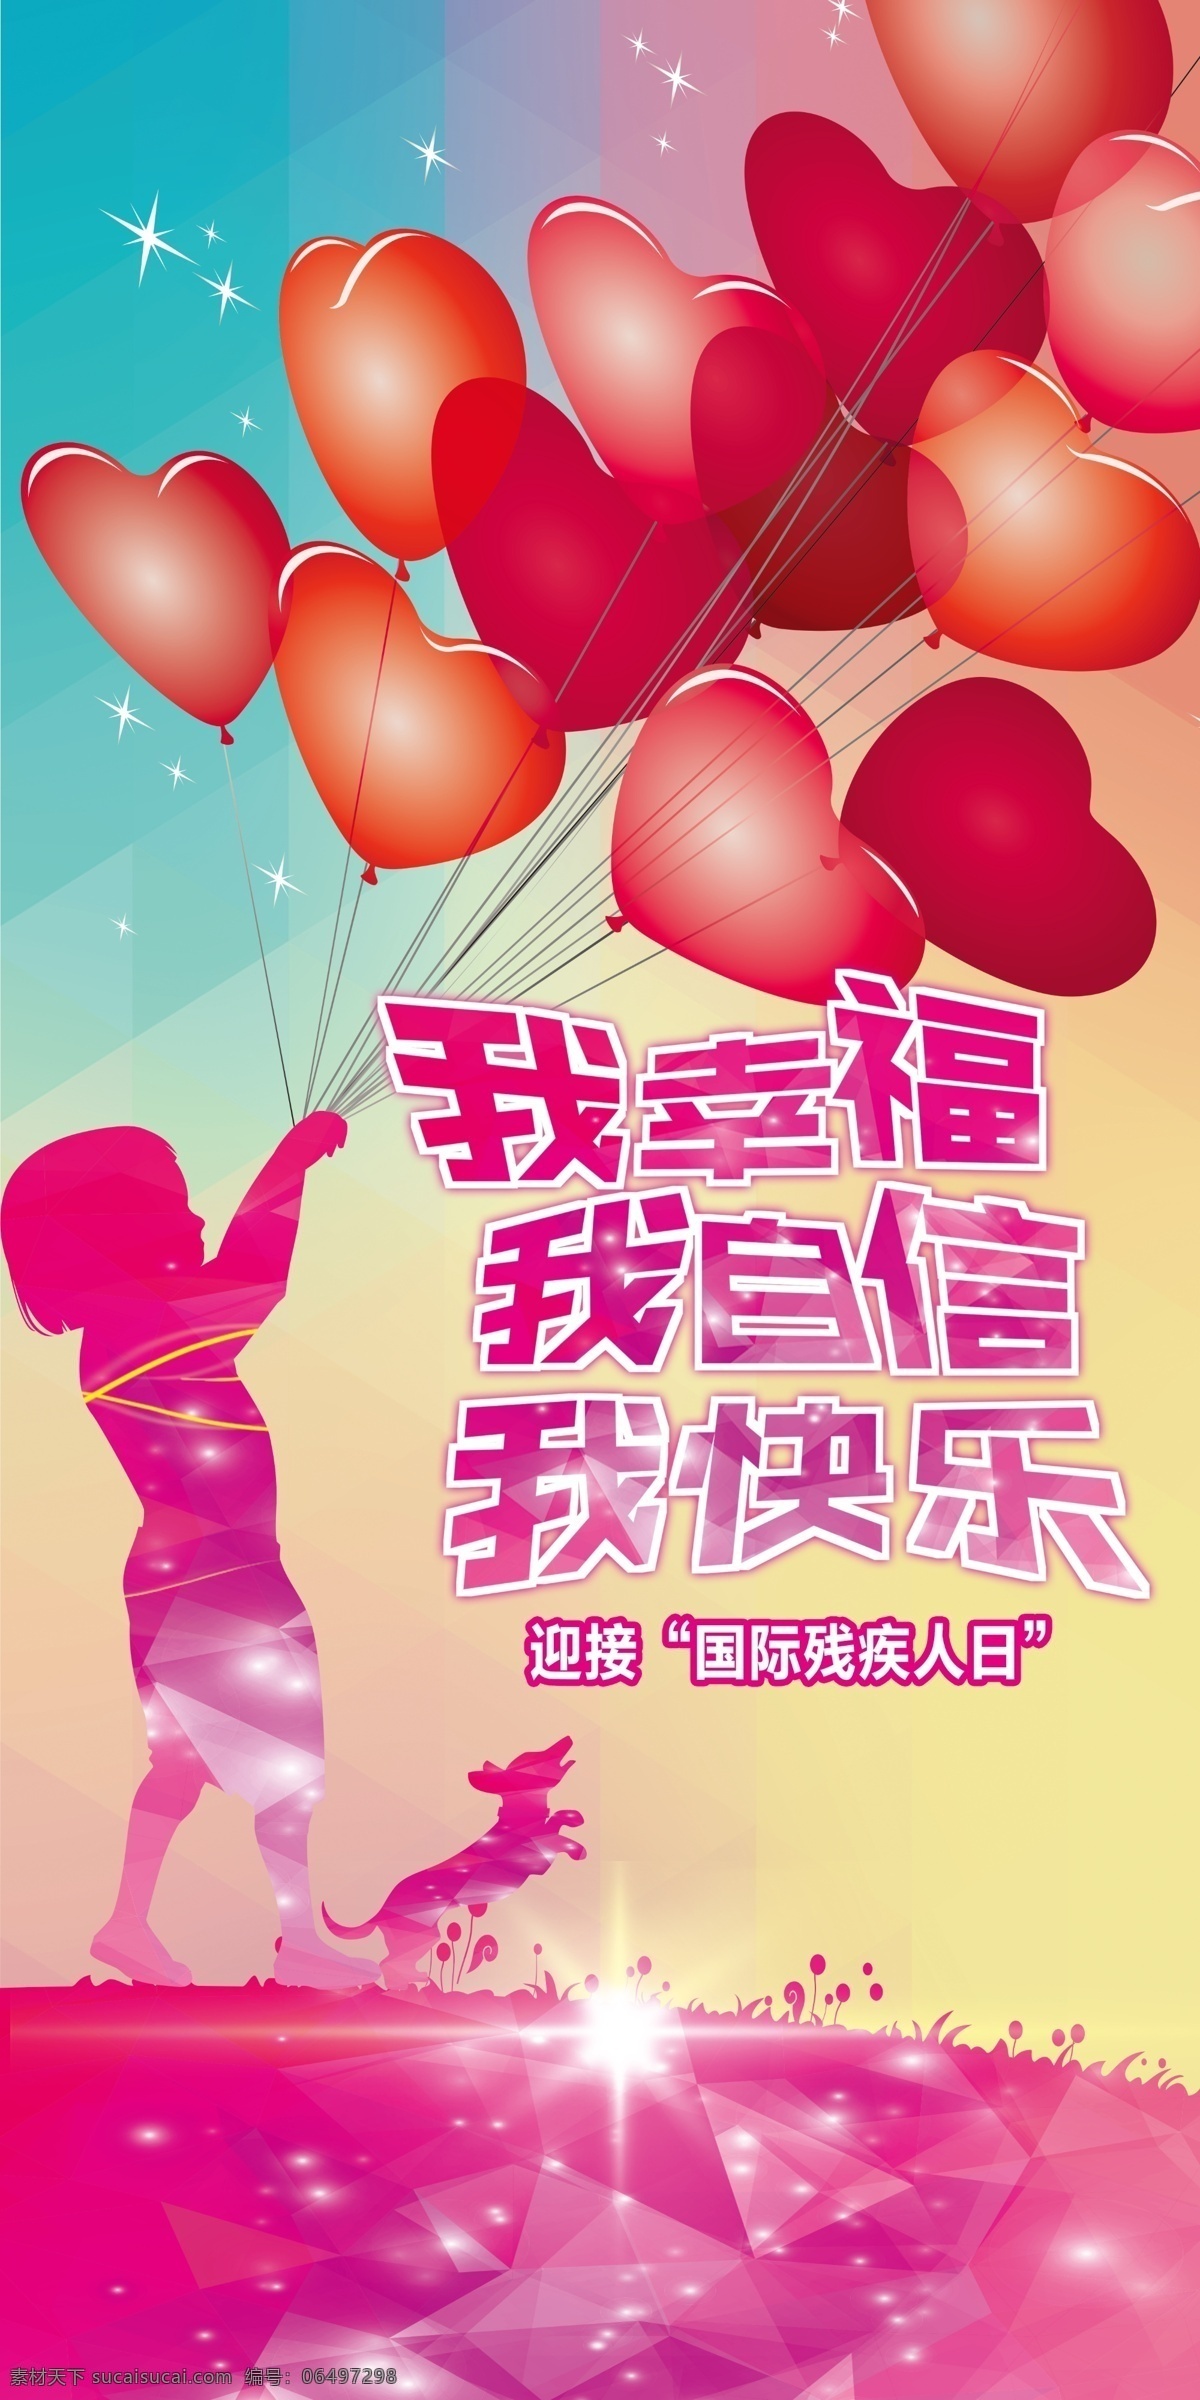 残疾人海报 童趣 卡通海报 气球 小女孩 爱心 爱心海报 爱心气球 粉色背景 红色